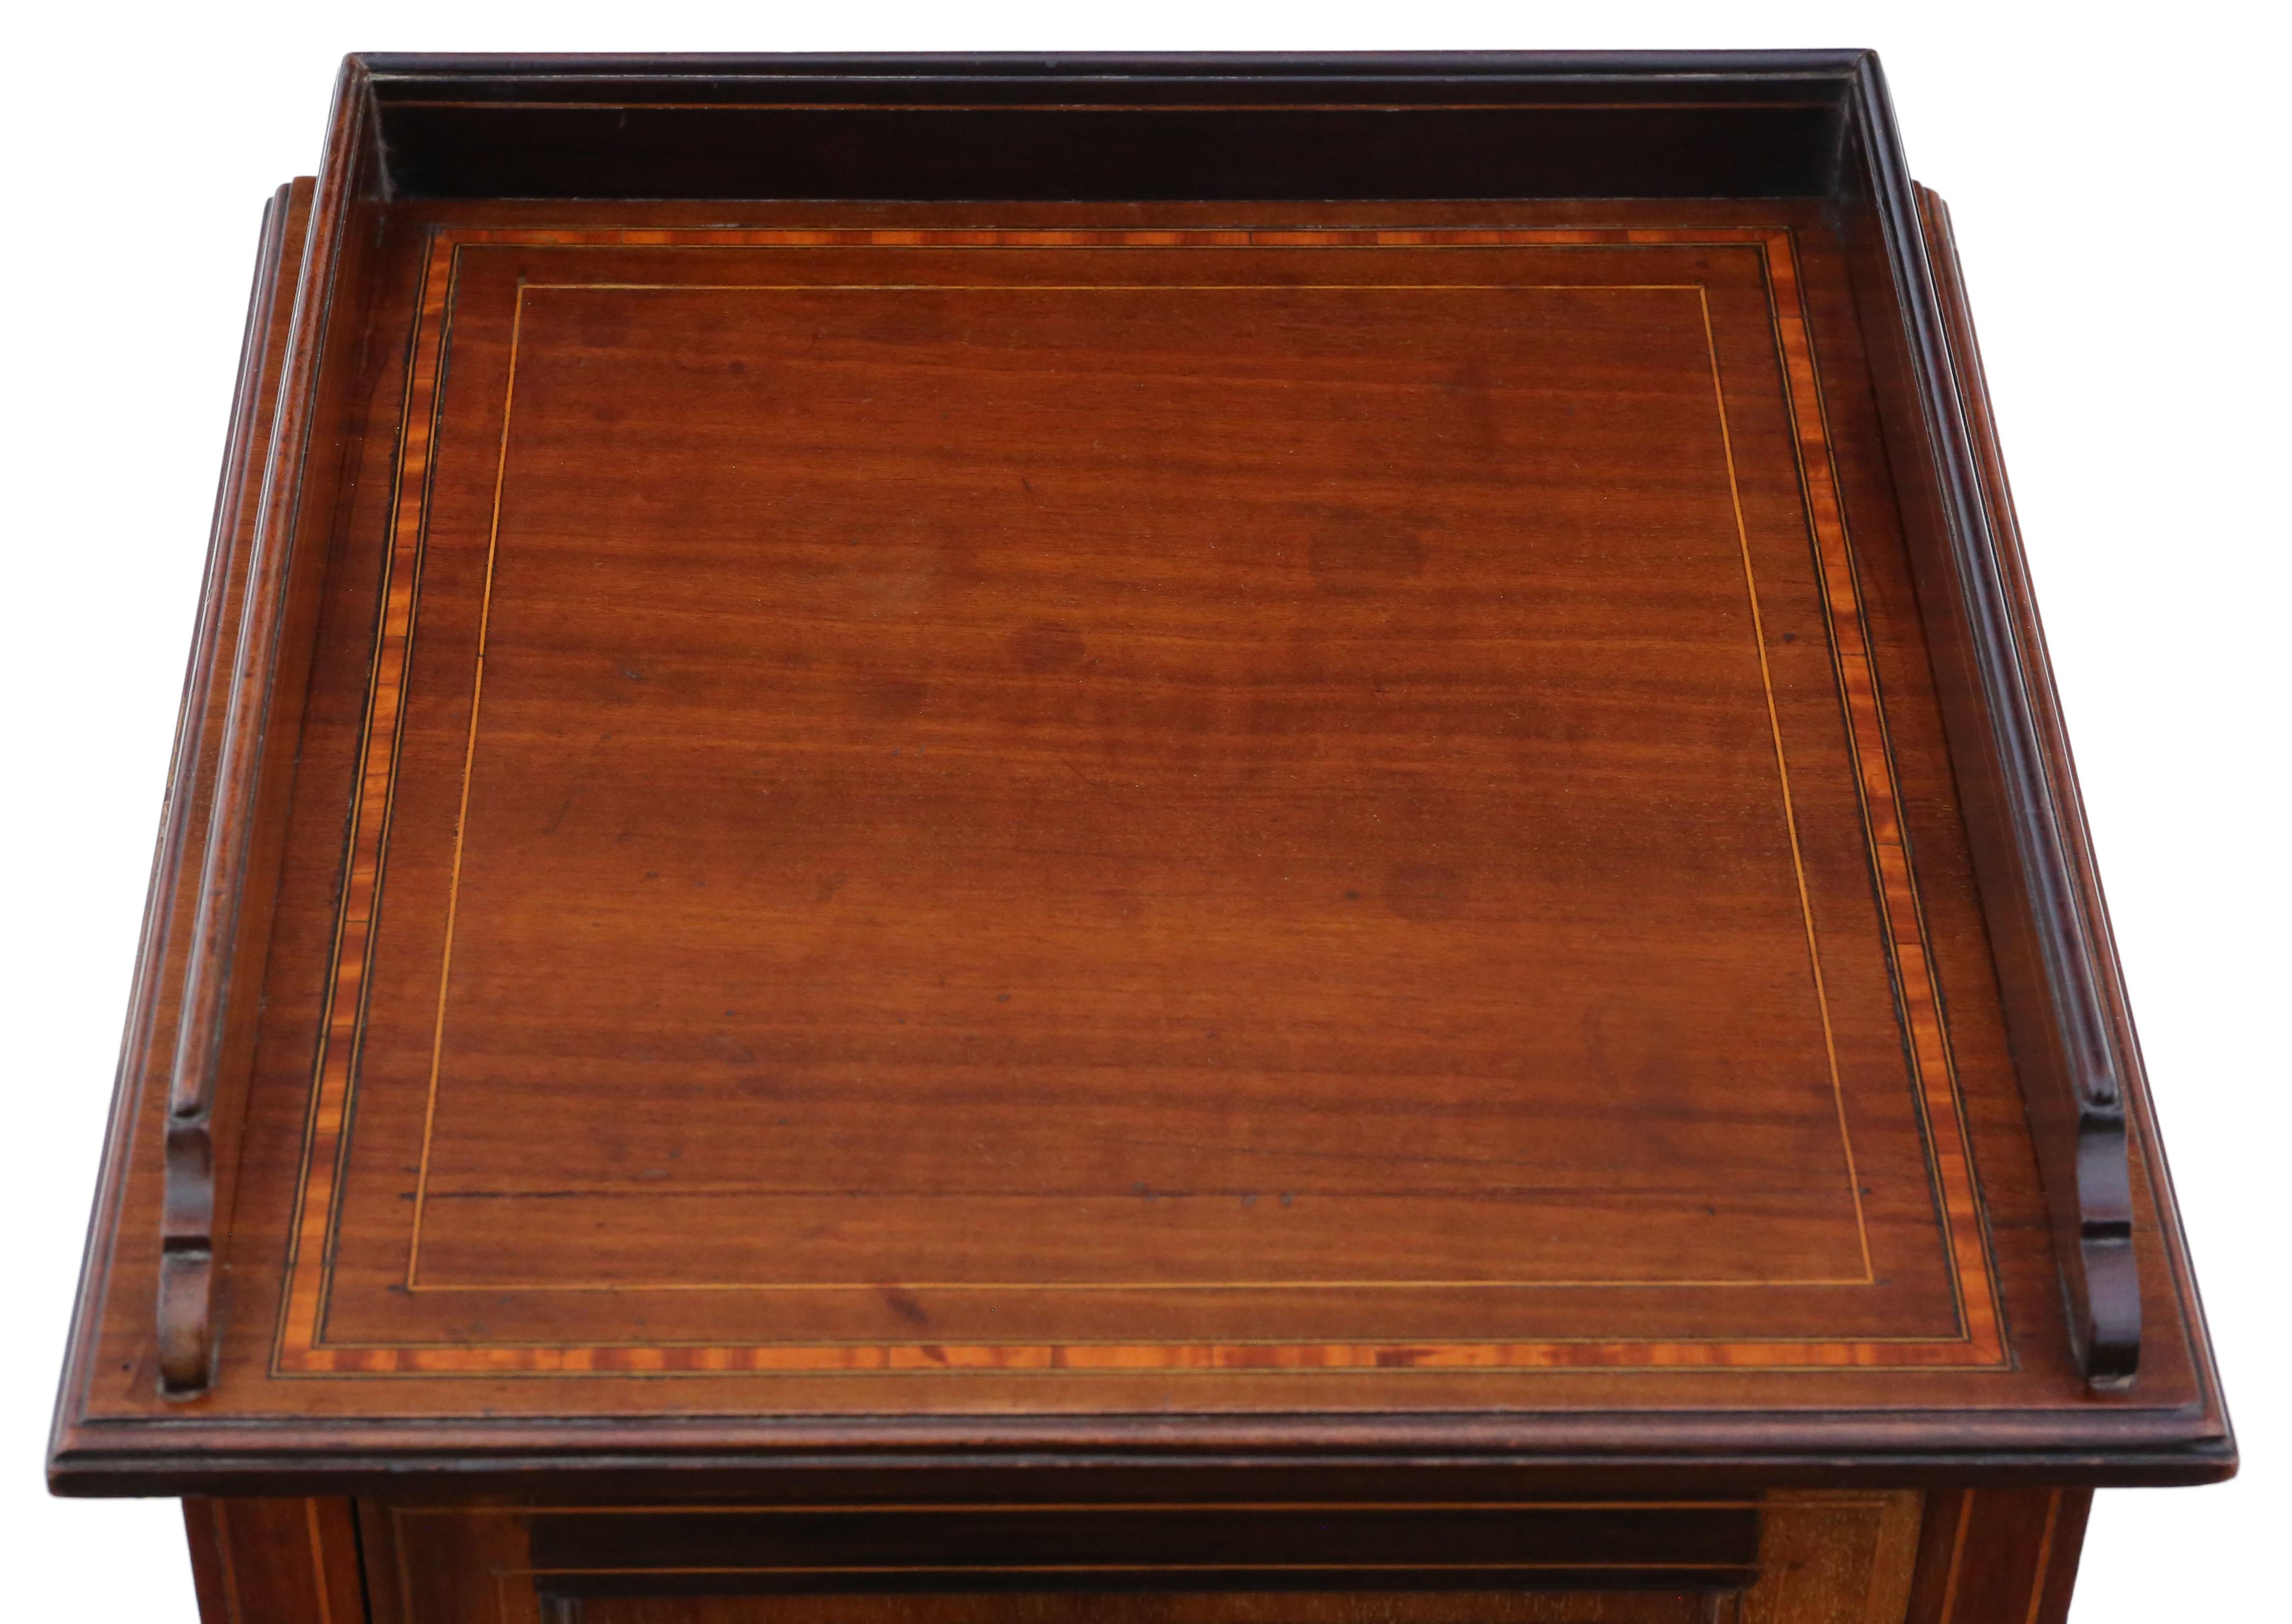 Ancienne table de chevet en acajou incrusté de style géorgien, circa 1905.

Une pièce fantastique de qualité et de style.

Il n'y a pas de joints lâches ou de ver à bois et le loquet fonctionne.

Il serait parfait dans le bon endroit